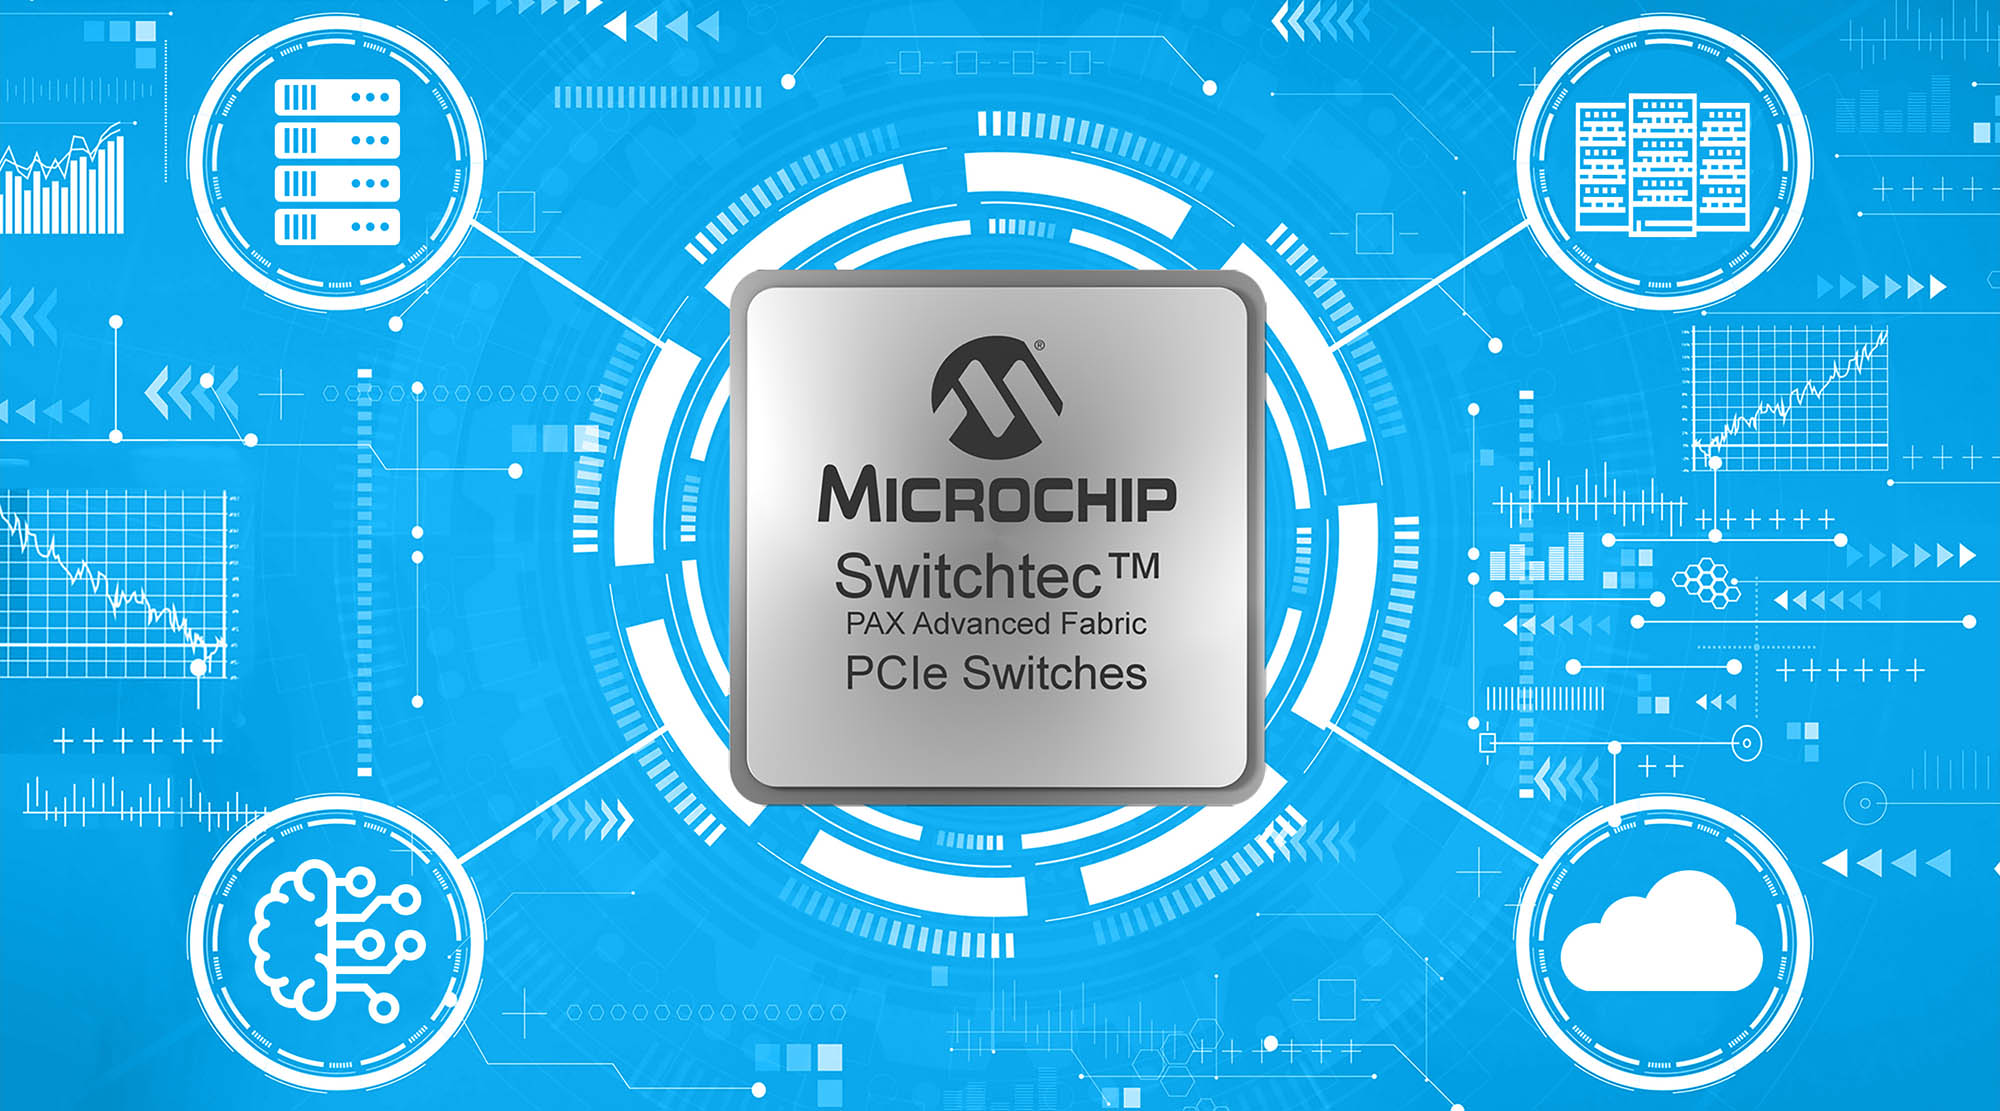 Các thiết bị chuyển mạch Switchtec PAX Advanced Fabric Gen 4 PCIe của Microchip được phát hành để sản xuất